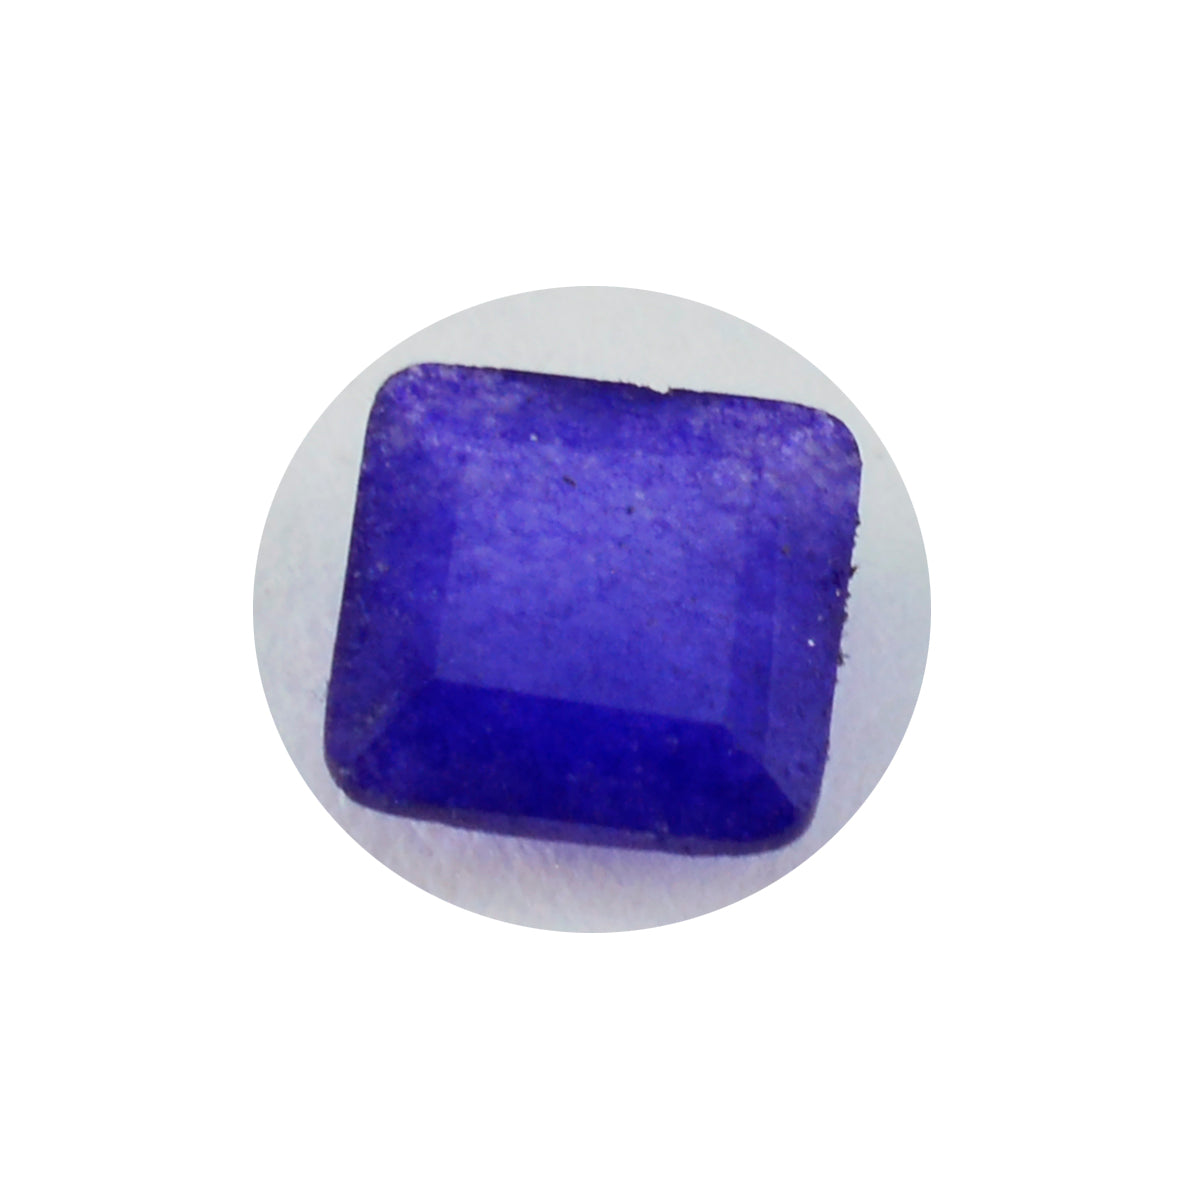 Riyogems 1 Stück echter blauer Jaspis, facettiert, 9 x 9 mm, quadratische Form, hübscher Qualitäts-Edelstein